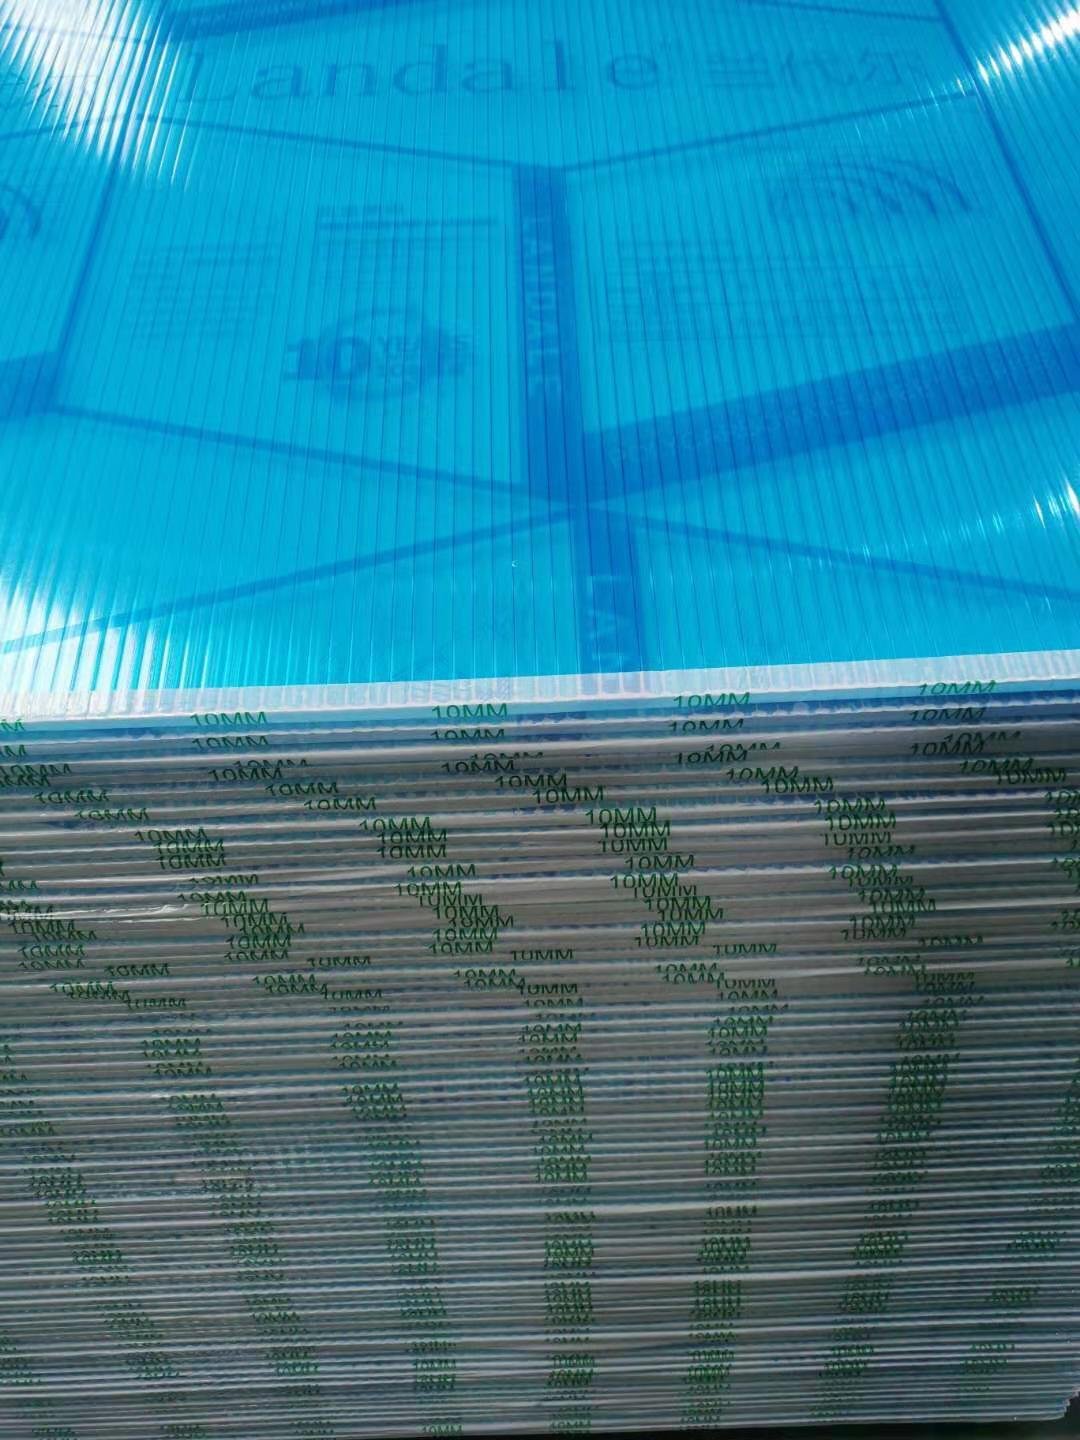 體育場屋頂陽光板遊樂場裝飾陽光板園林裝修陽光板 4